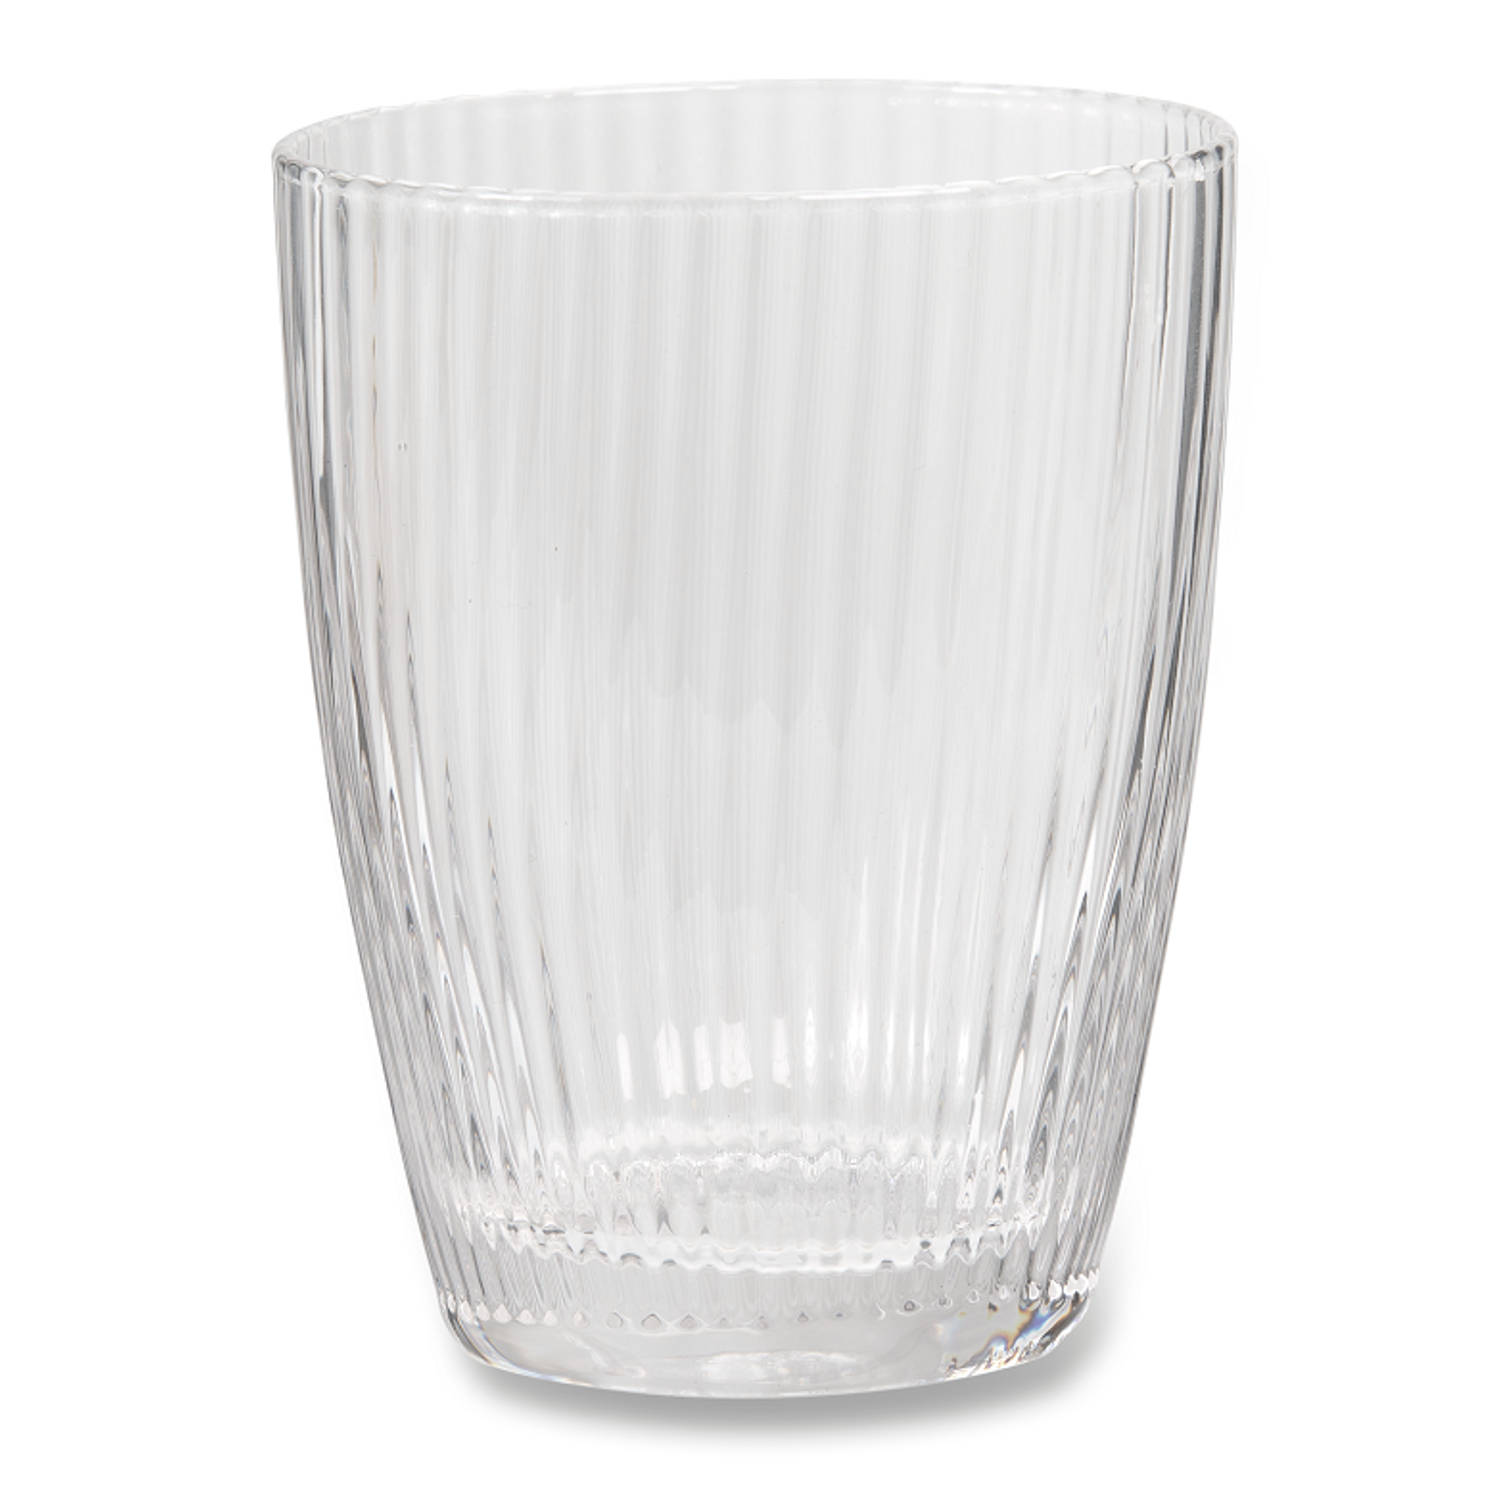 meteoor bevind zich Ik heb het erkend Blokker Costa Nova drinkglas - ribbel - 35 cl | Blokker